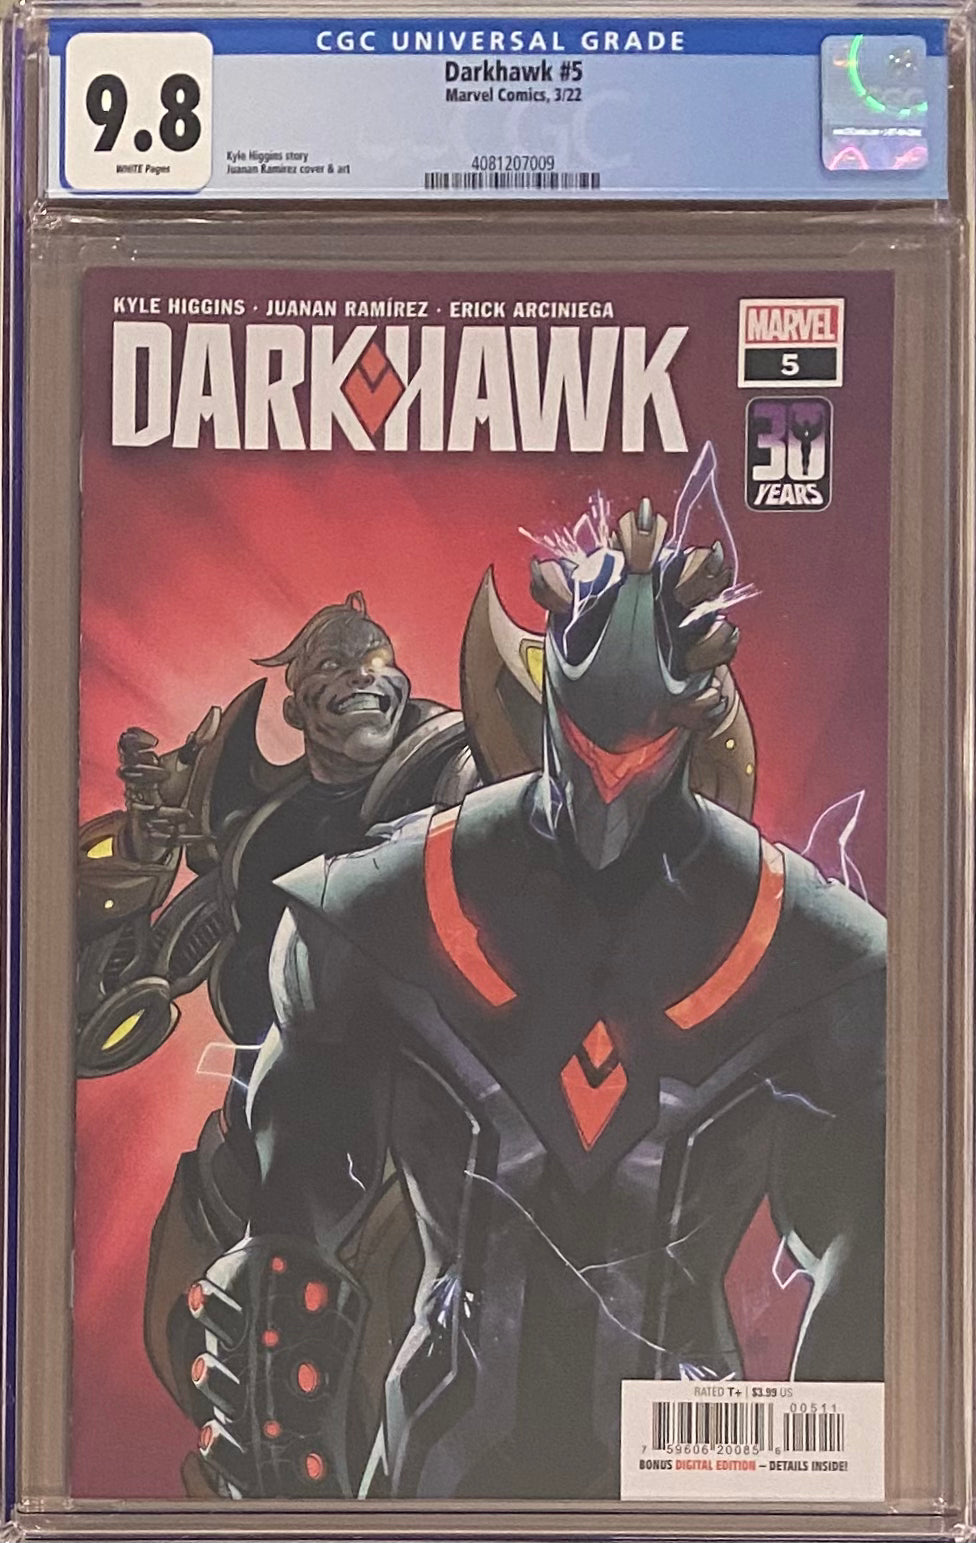 Darkhawk #5 CGC 9.8